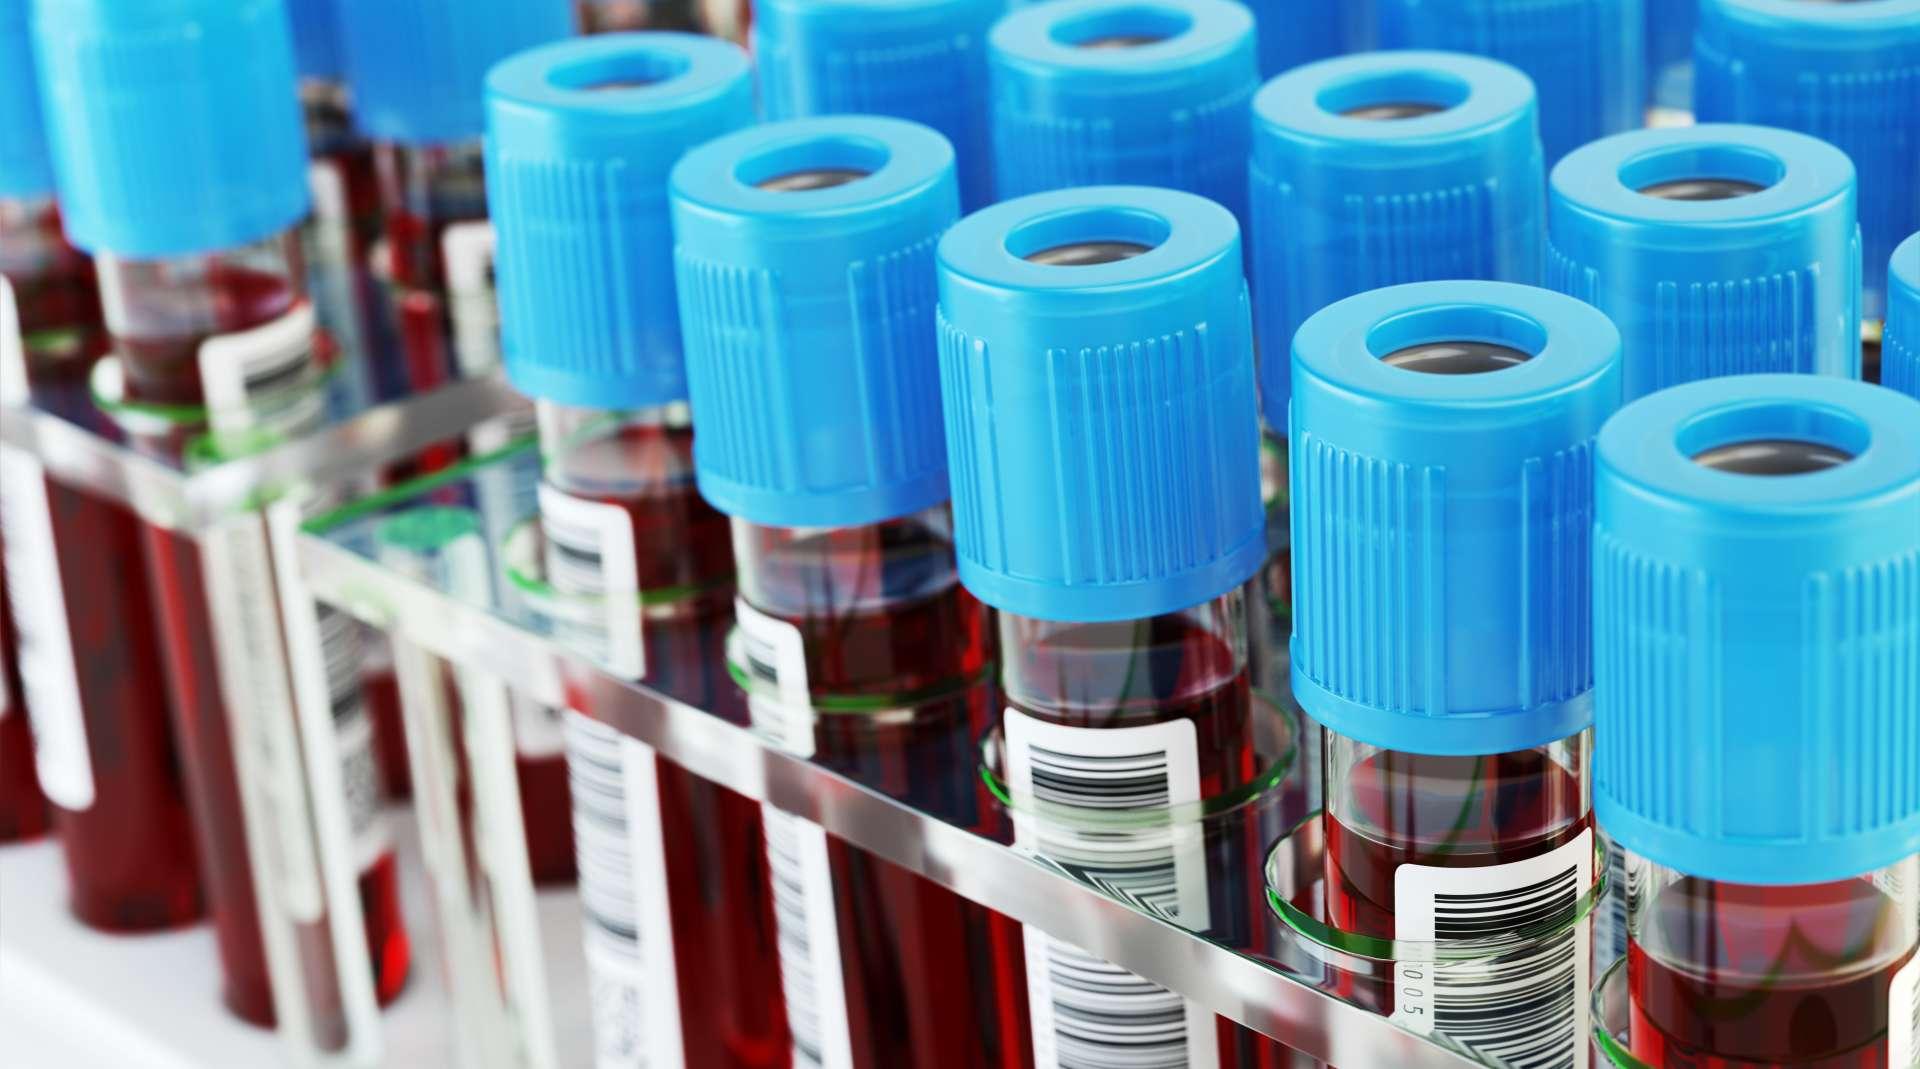 Blood test tubes. Blood samples in a rack. 3d illustration